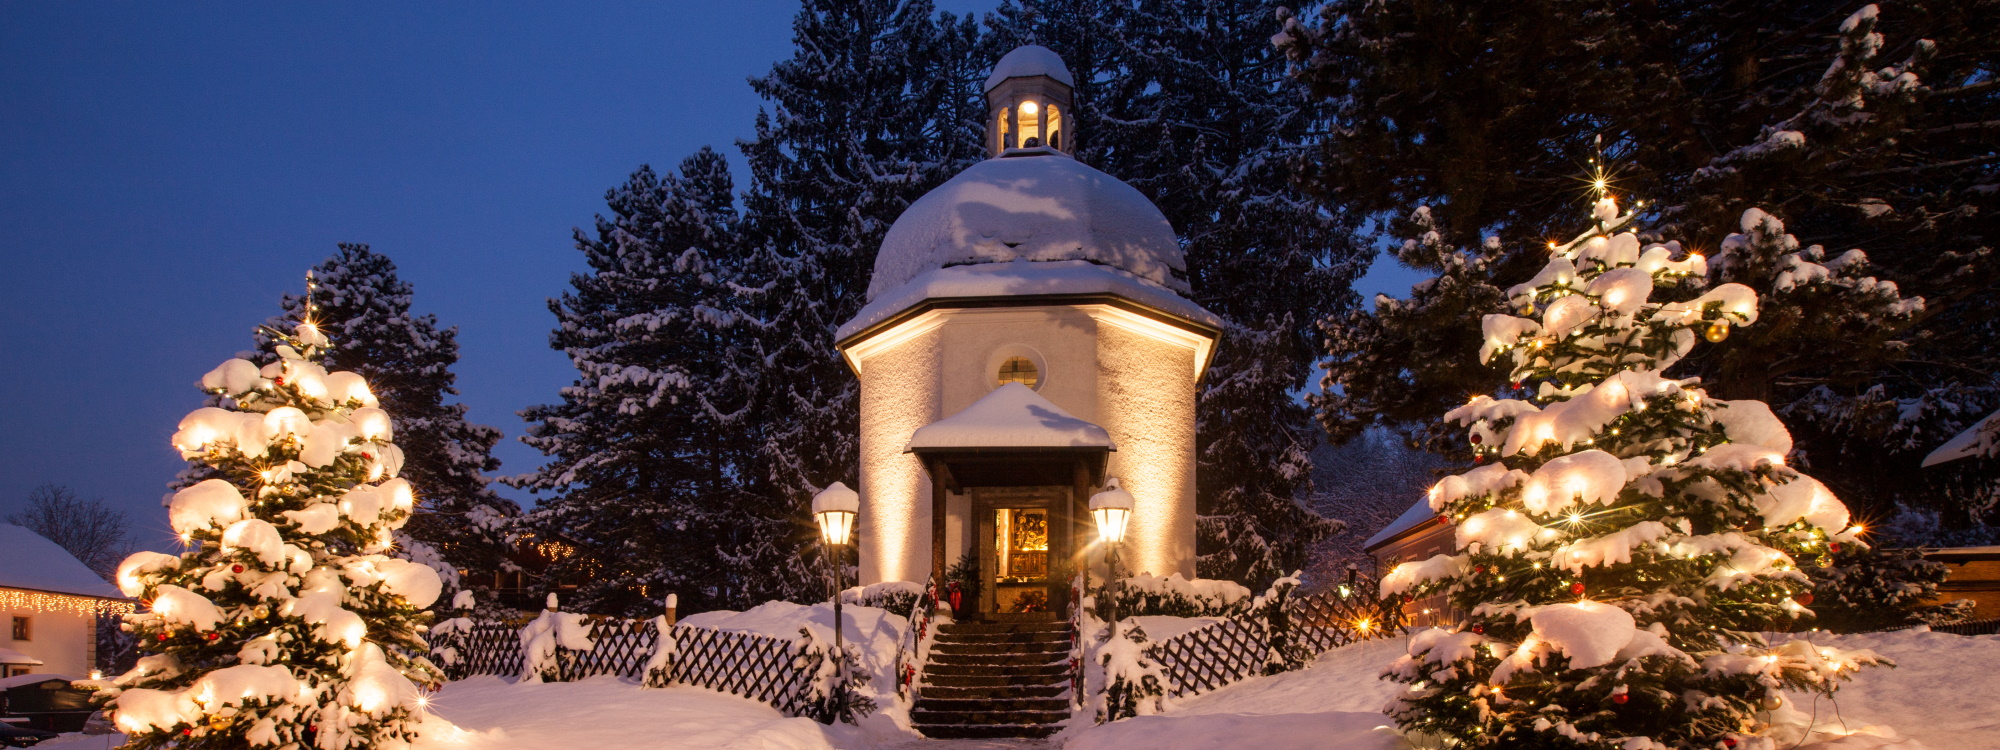 Stille-Nacht-Kapelle zur Weihnachtszeit mit geschmückten Christbäumen © Manfred Fiedler